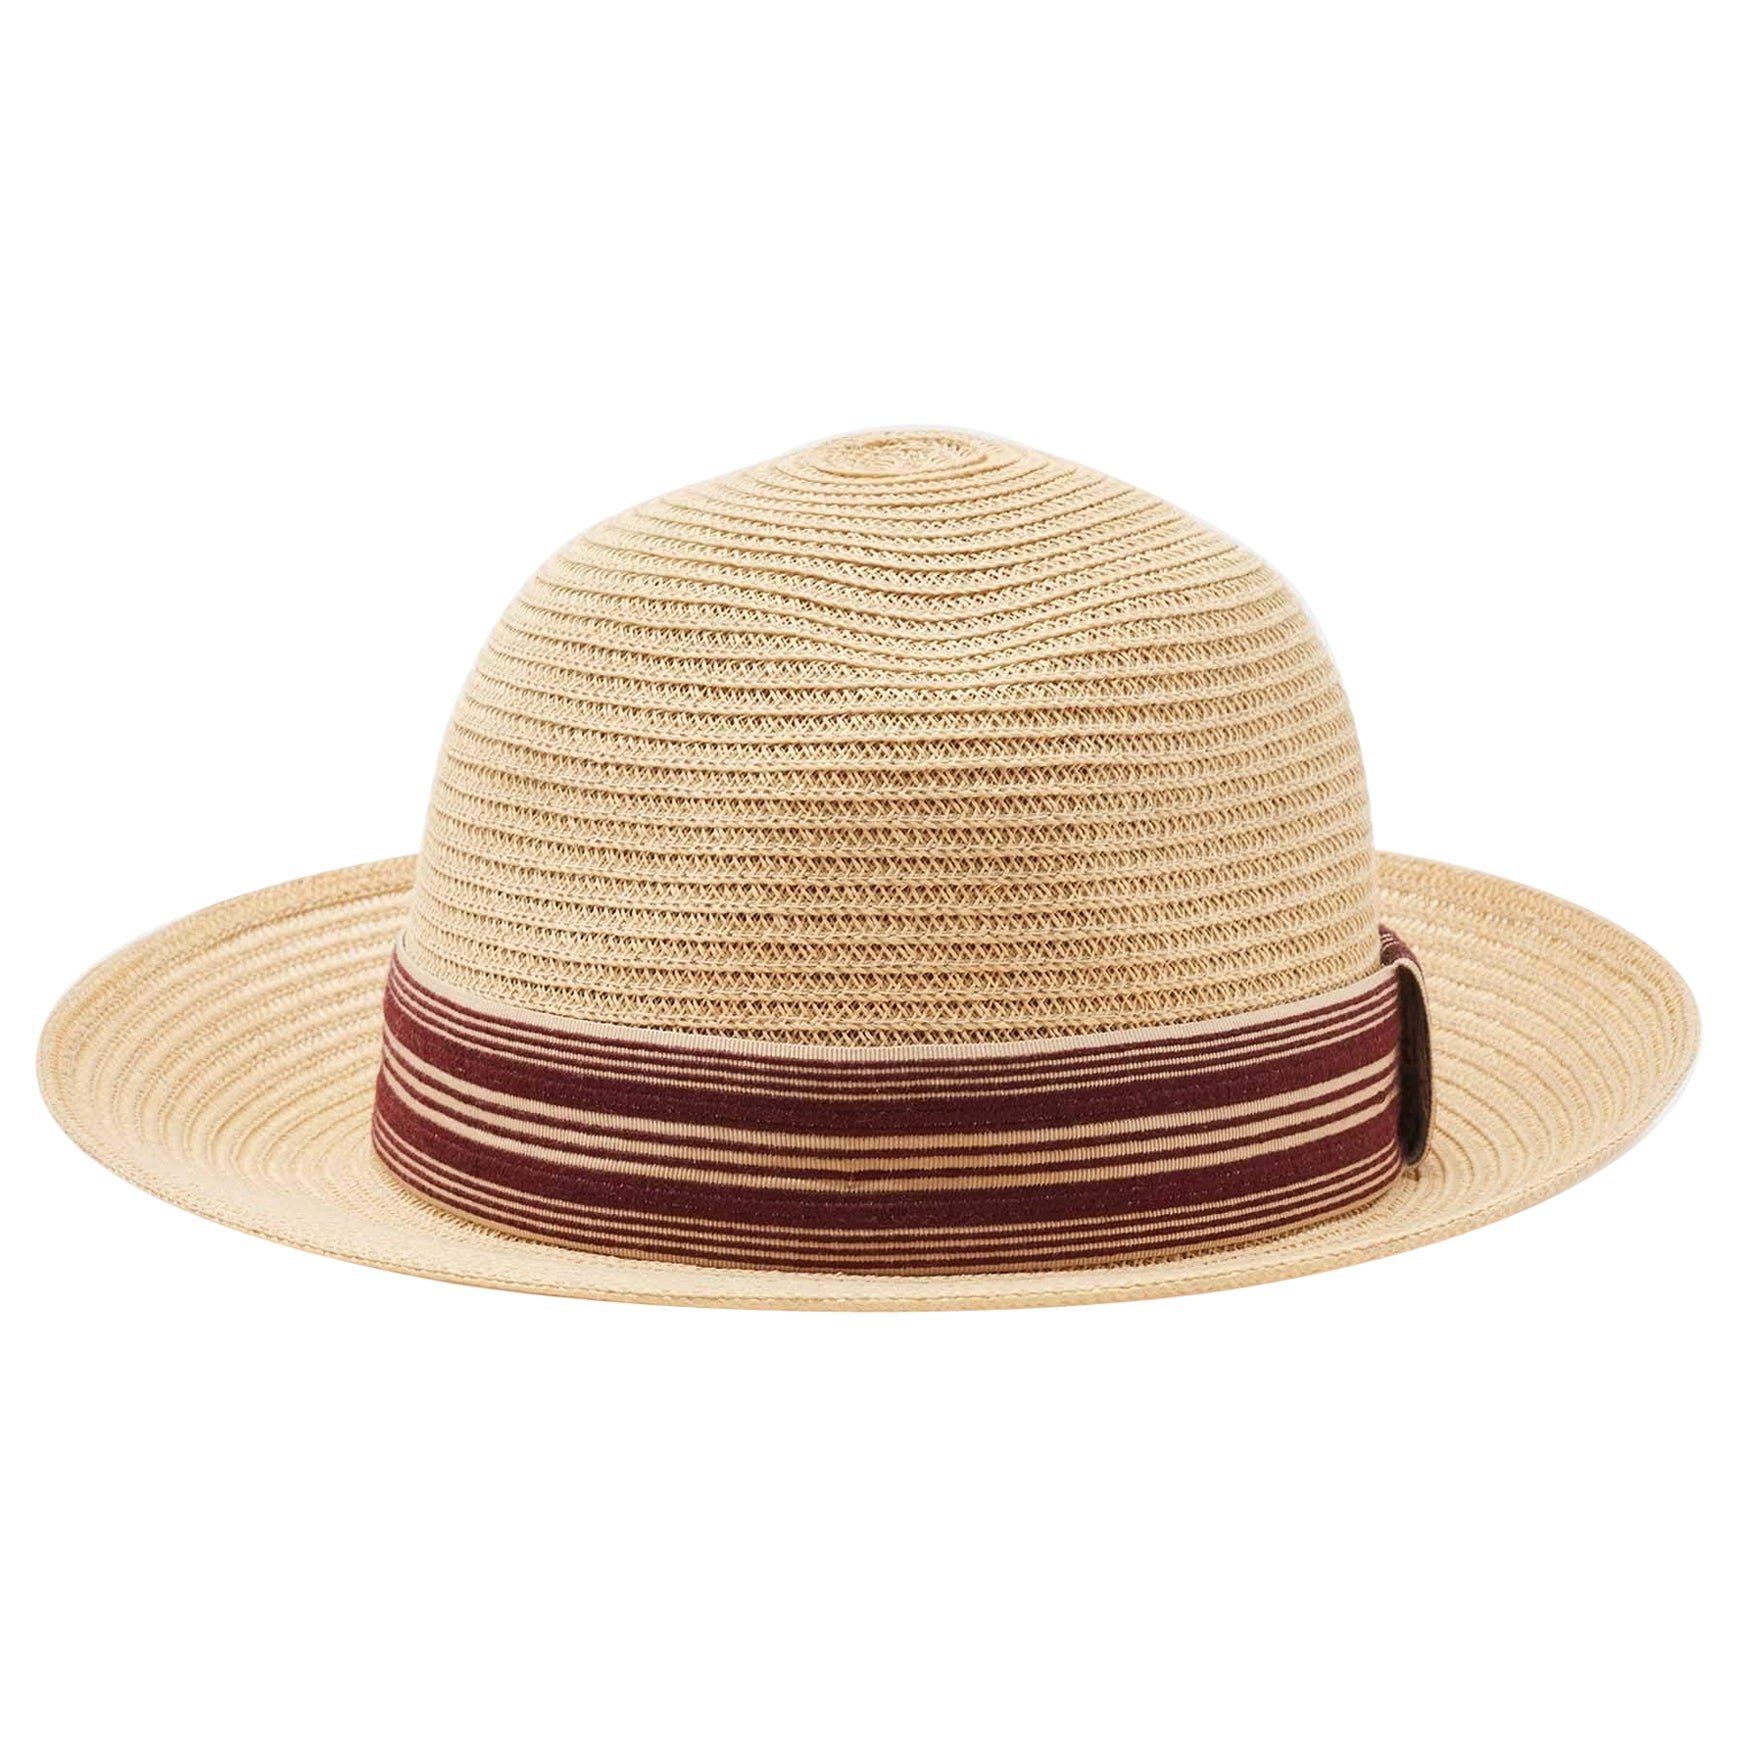 Dior Beige Straw Small Brim Dioresort Hat